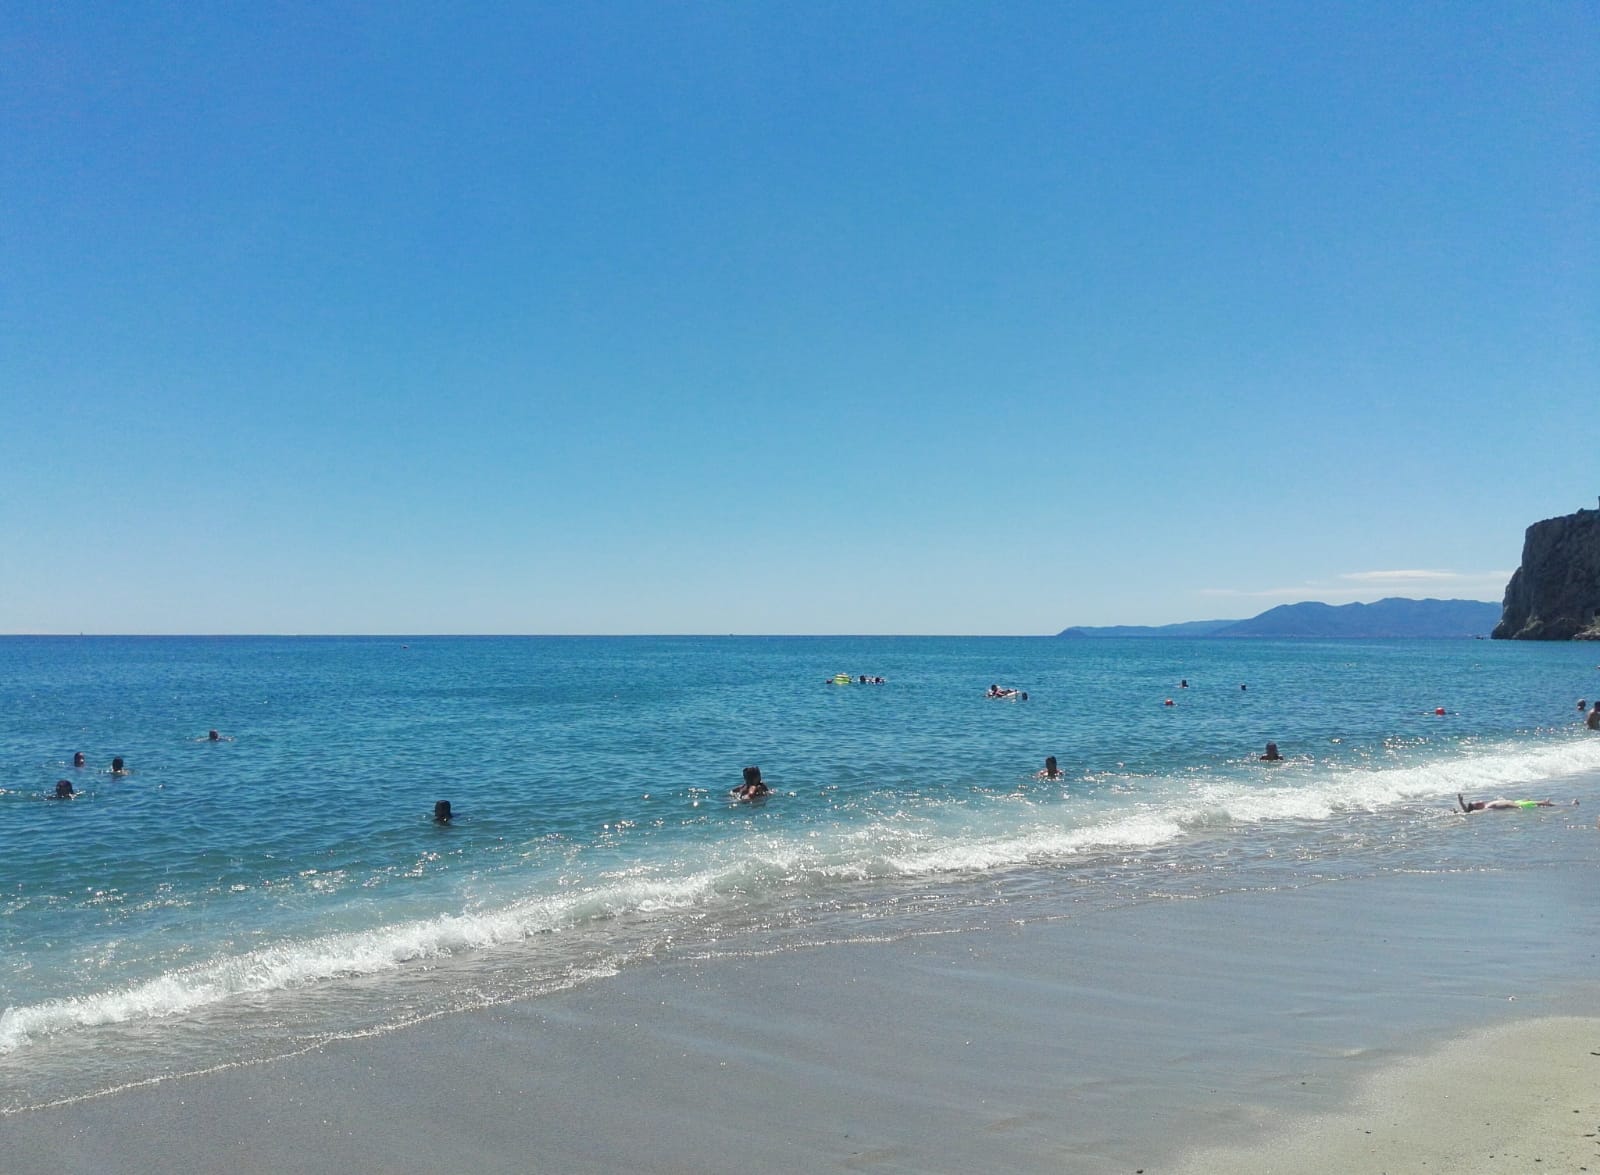 Foto av Spiaggia libera Attrezzata med blått vatten yta